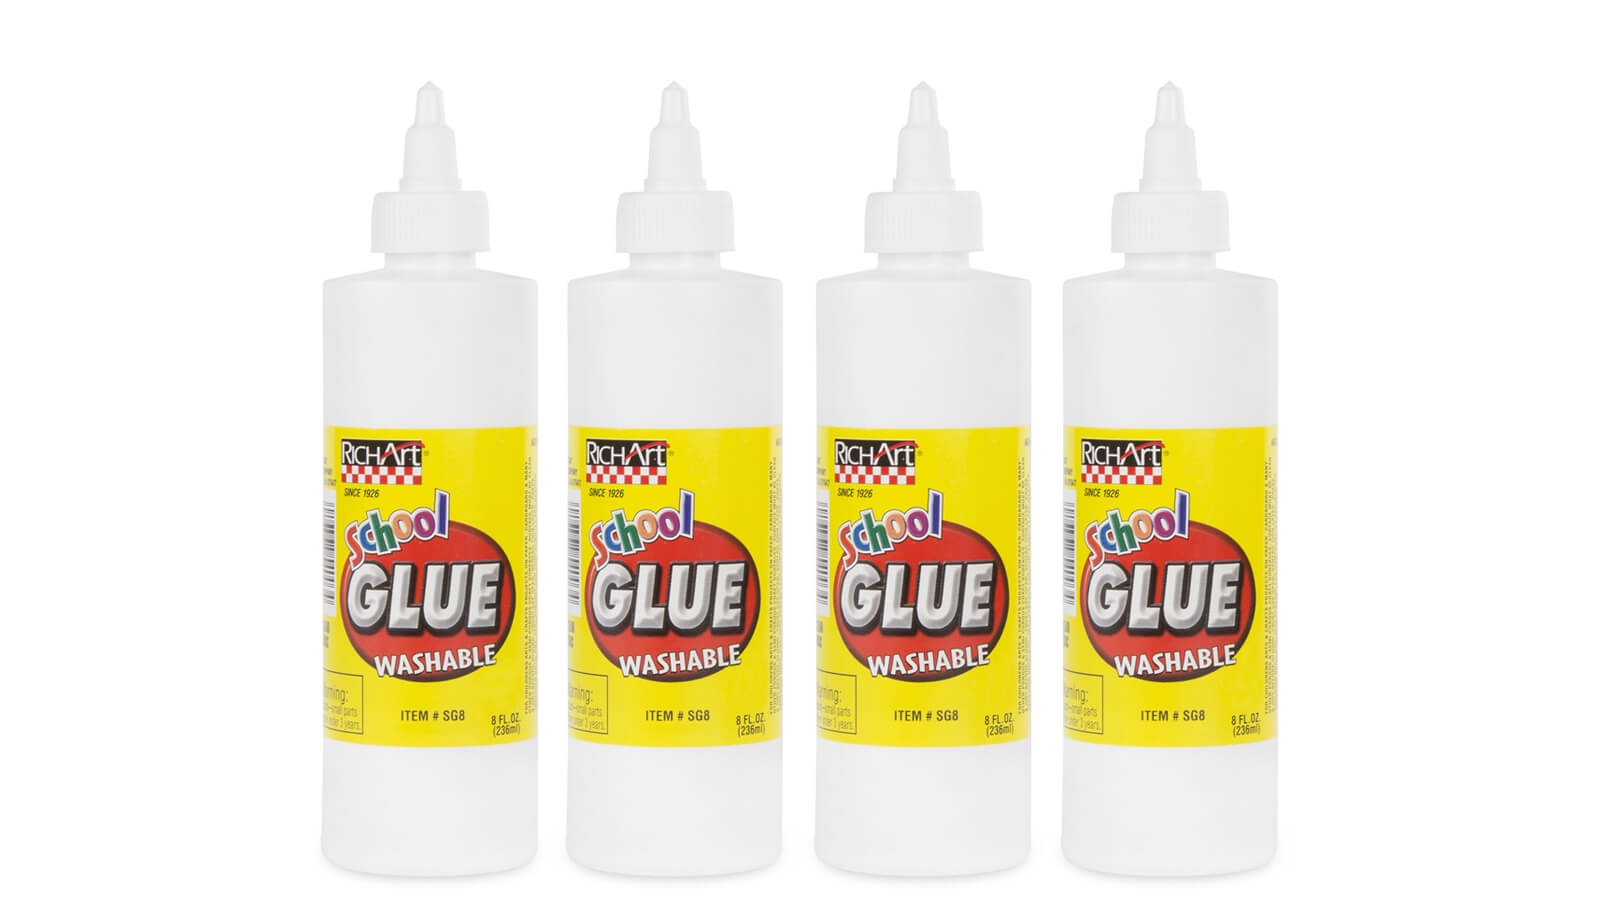 Supertite White School Glue, 1.91 oz